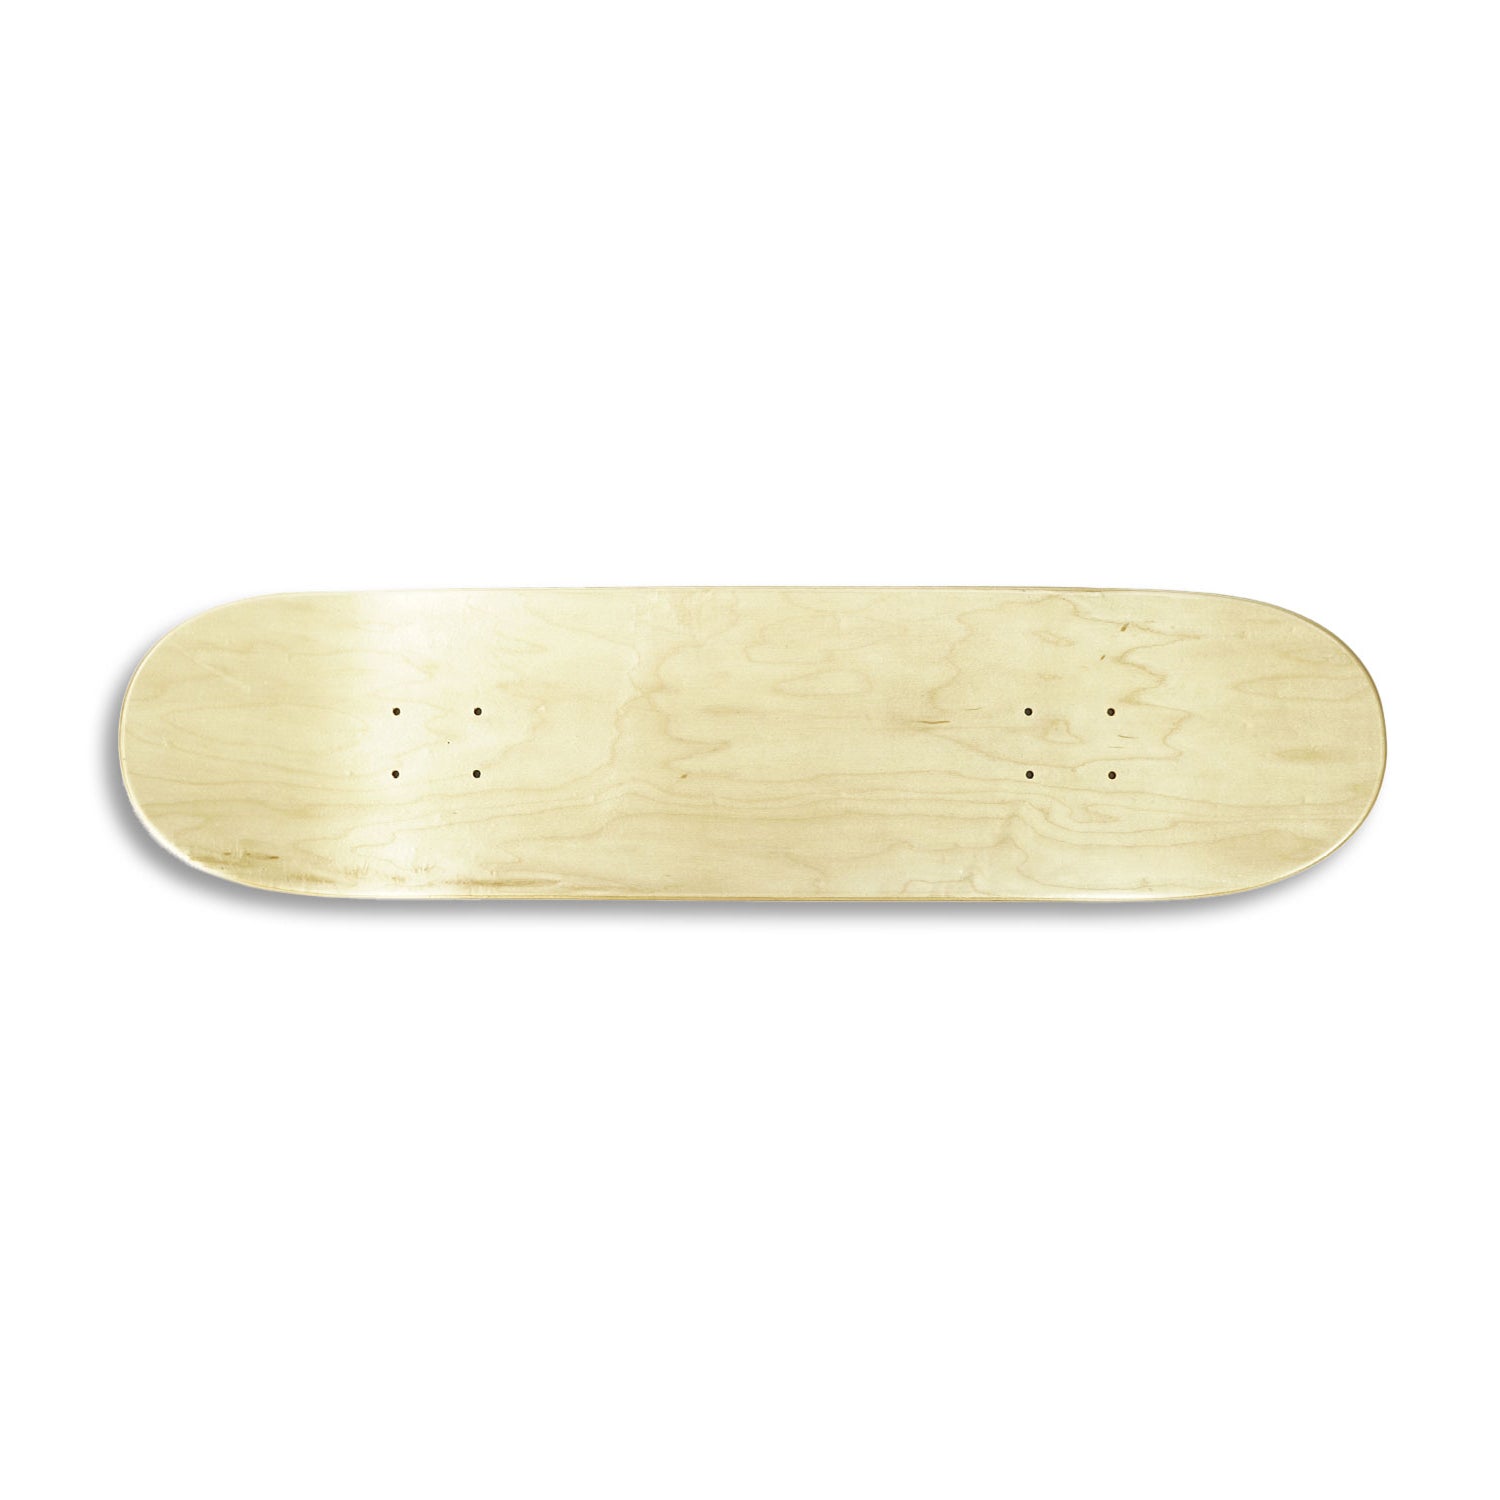 Sidewinder Skate Deck